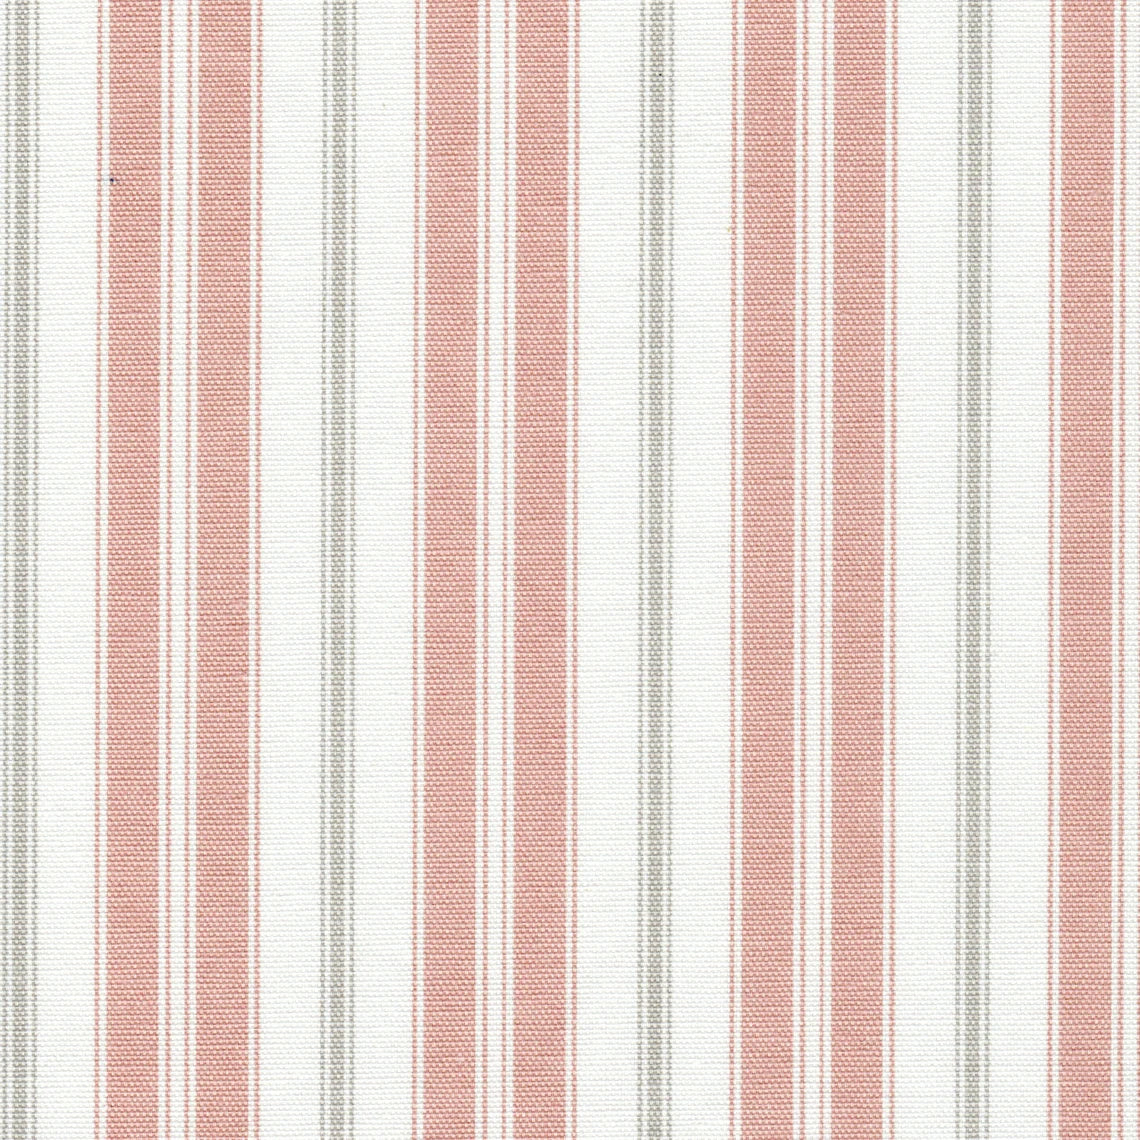 tailored valance in newbury blush stripe- pink, gray, white